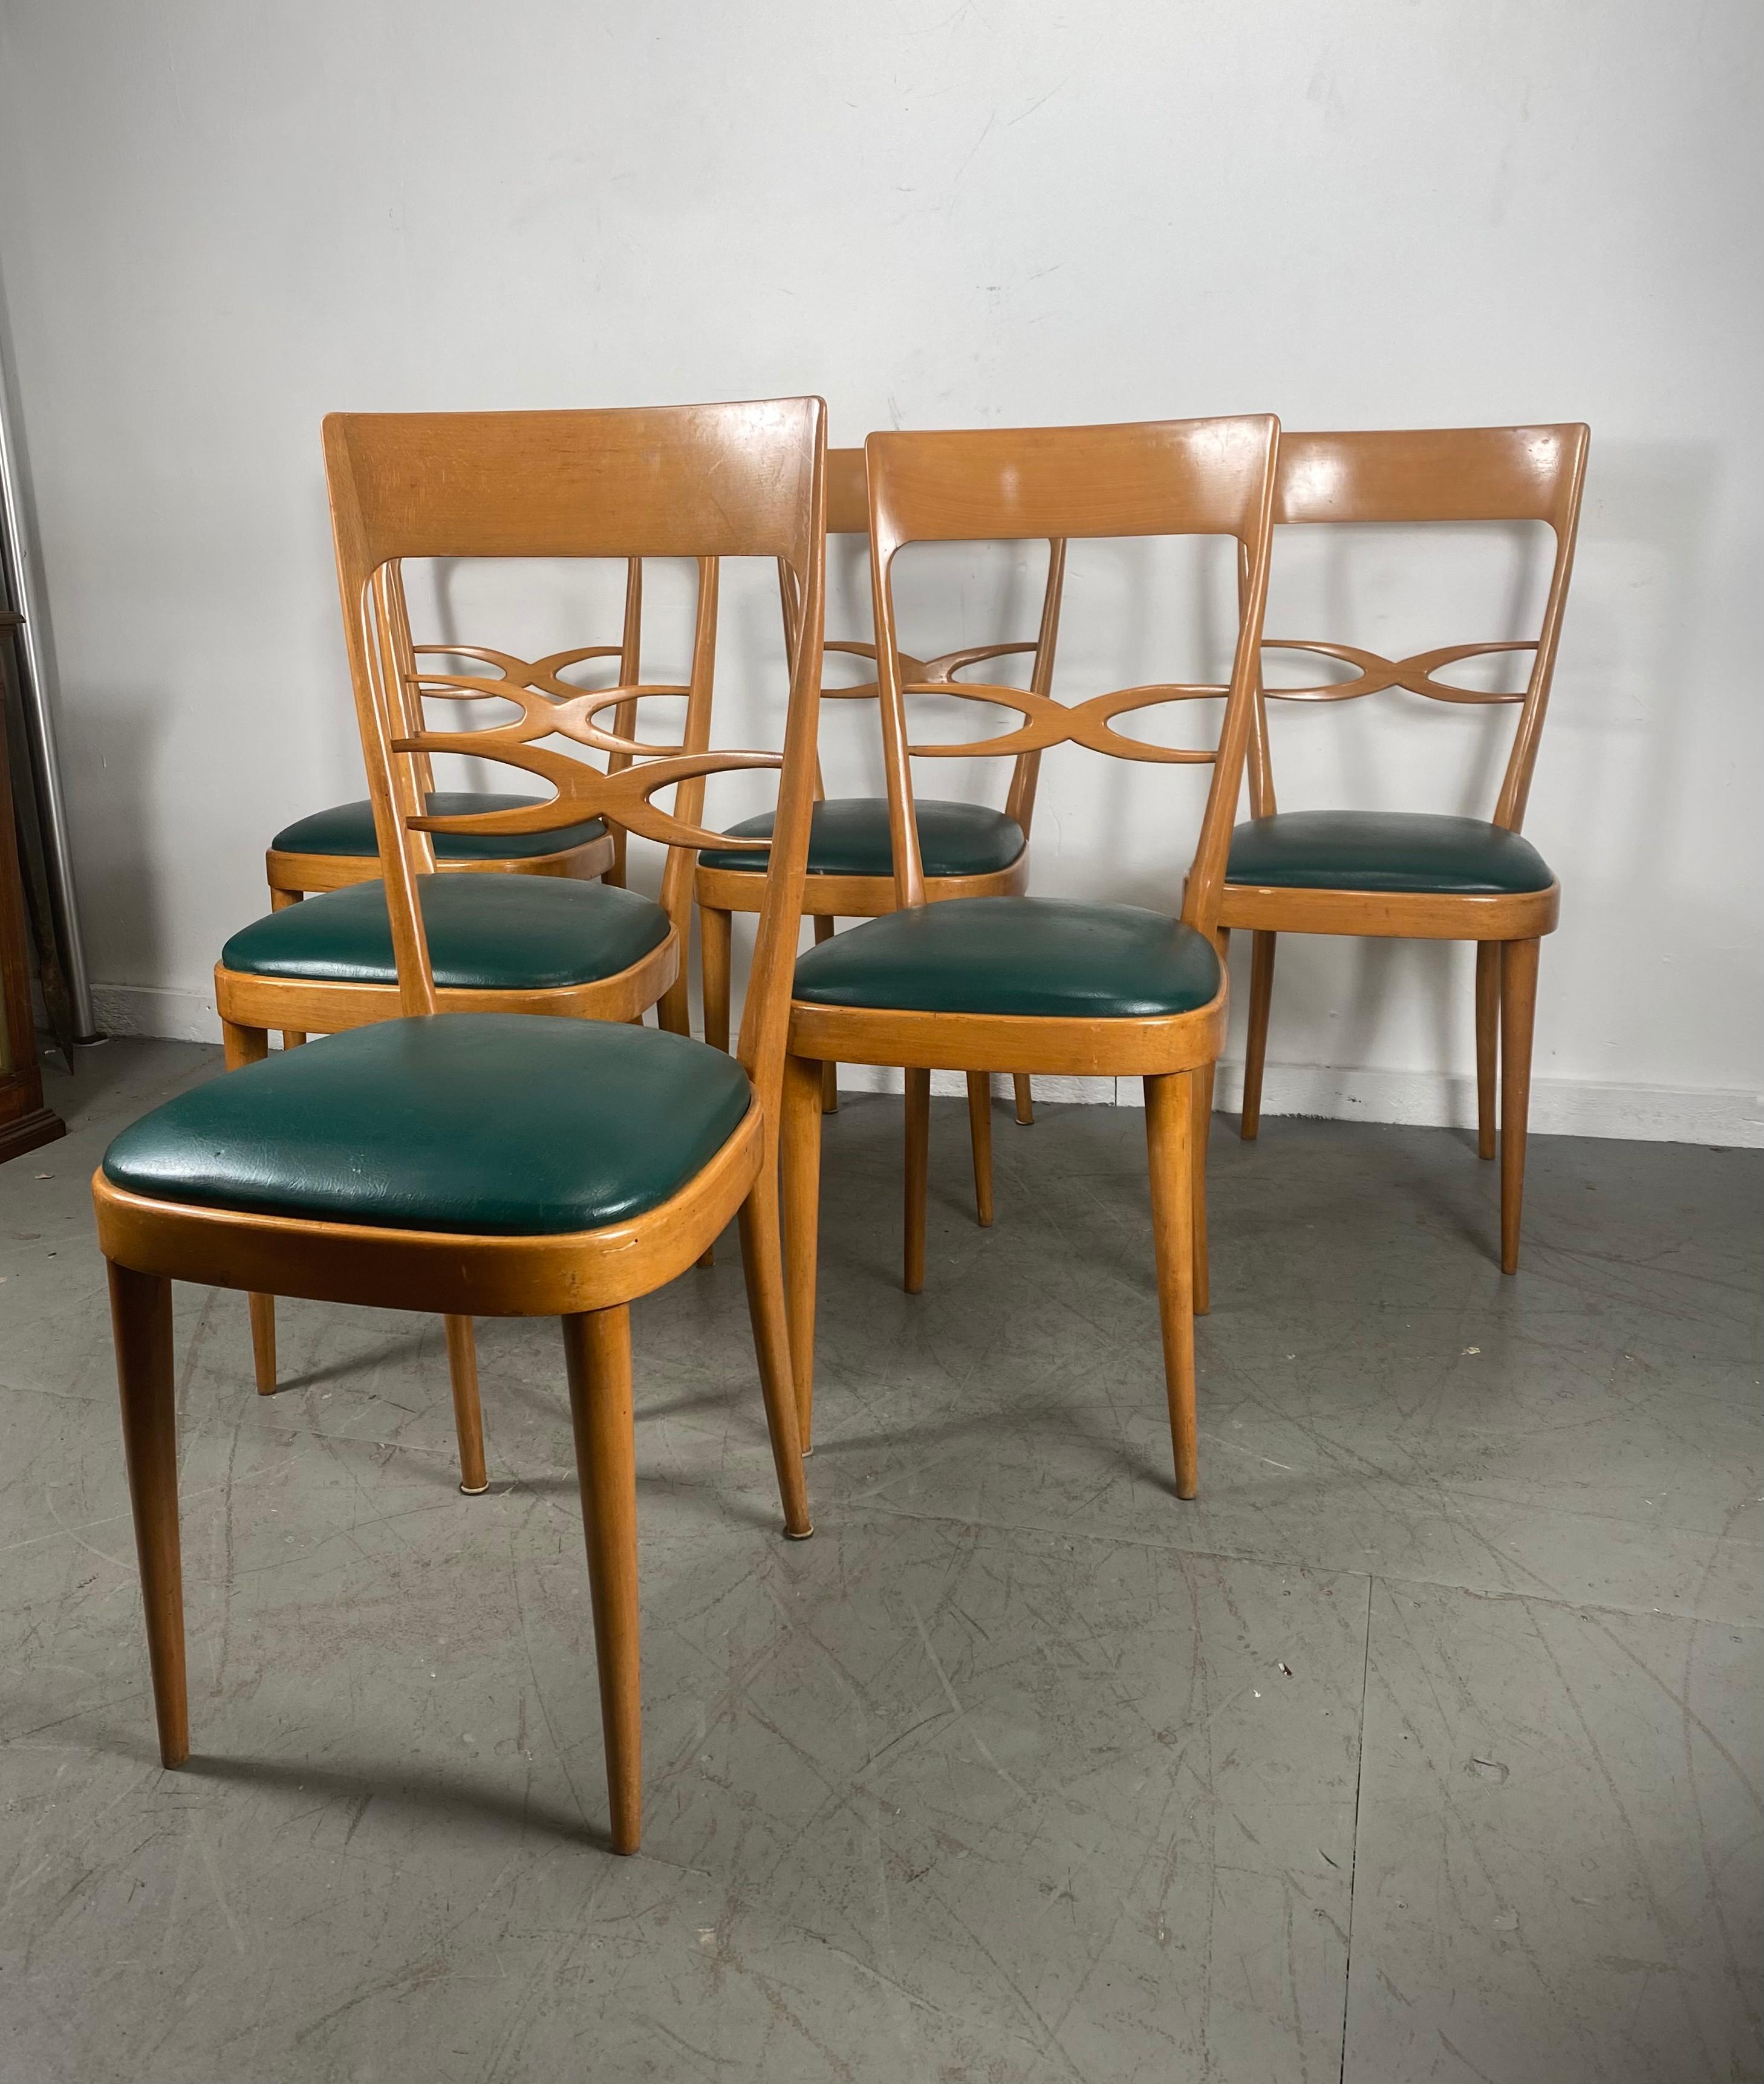 Superbe ensemble de 6 chaises de salle à manger modernistes italiennes attribuées à Carlo De Carli, design classique du milieu du siècle, qualité et construction étonnantes, je crois que le bois est du hêtre ou du bouleau massif, conserve les sièges